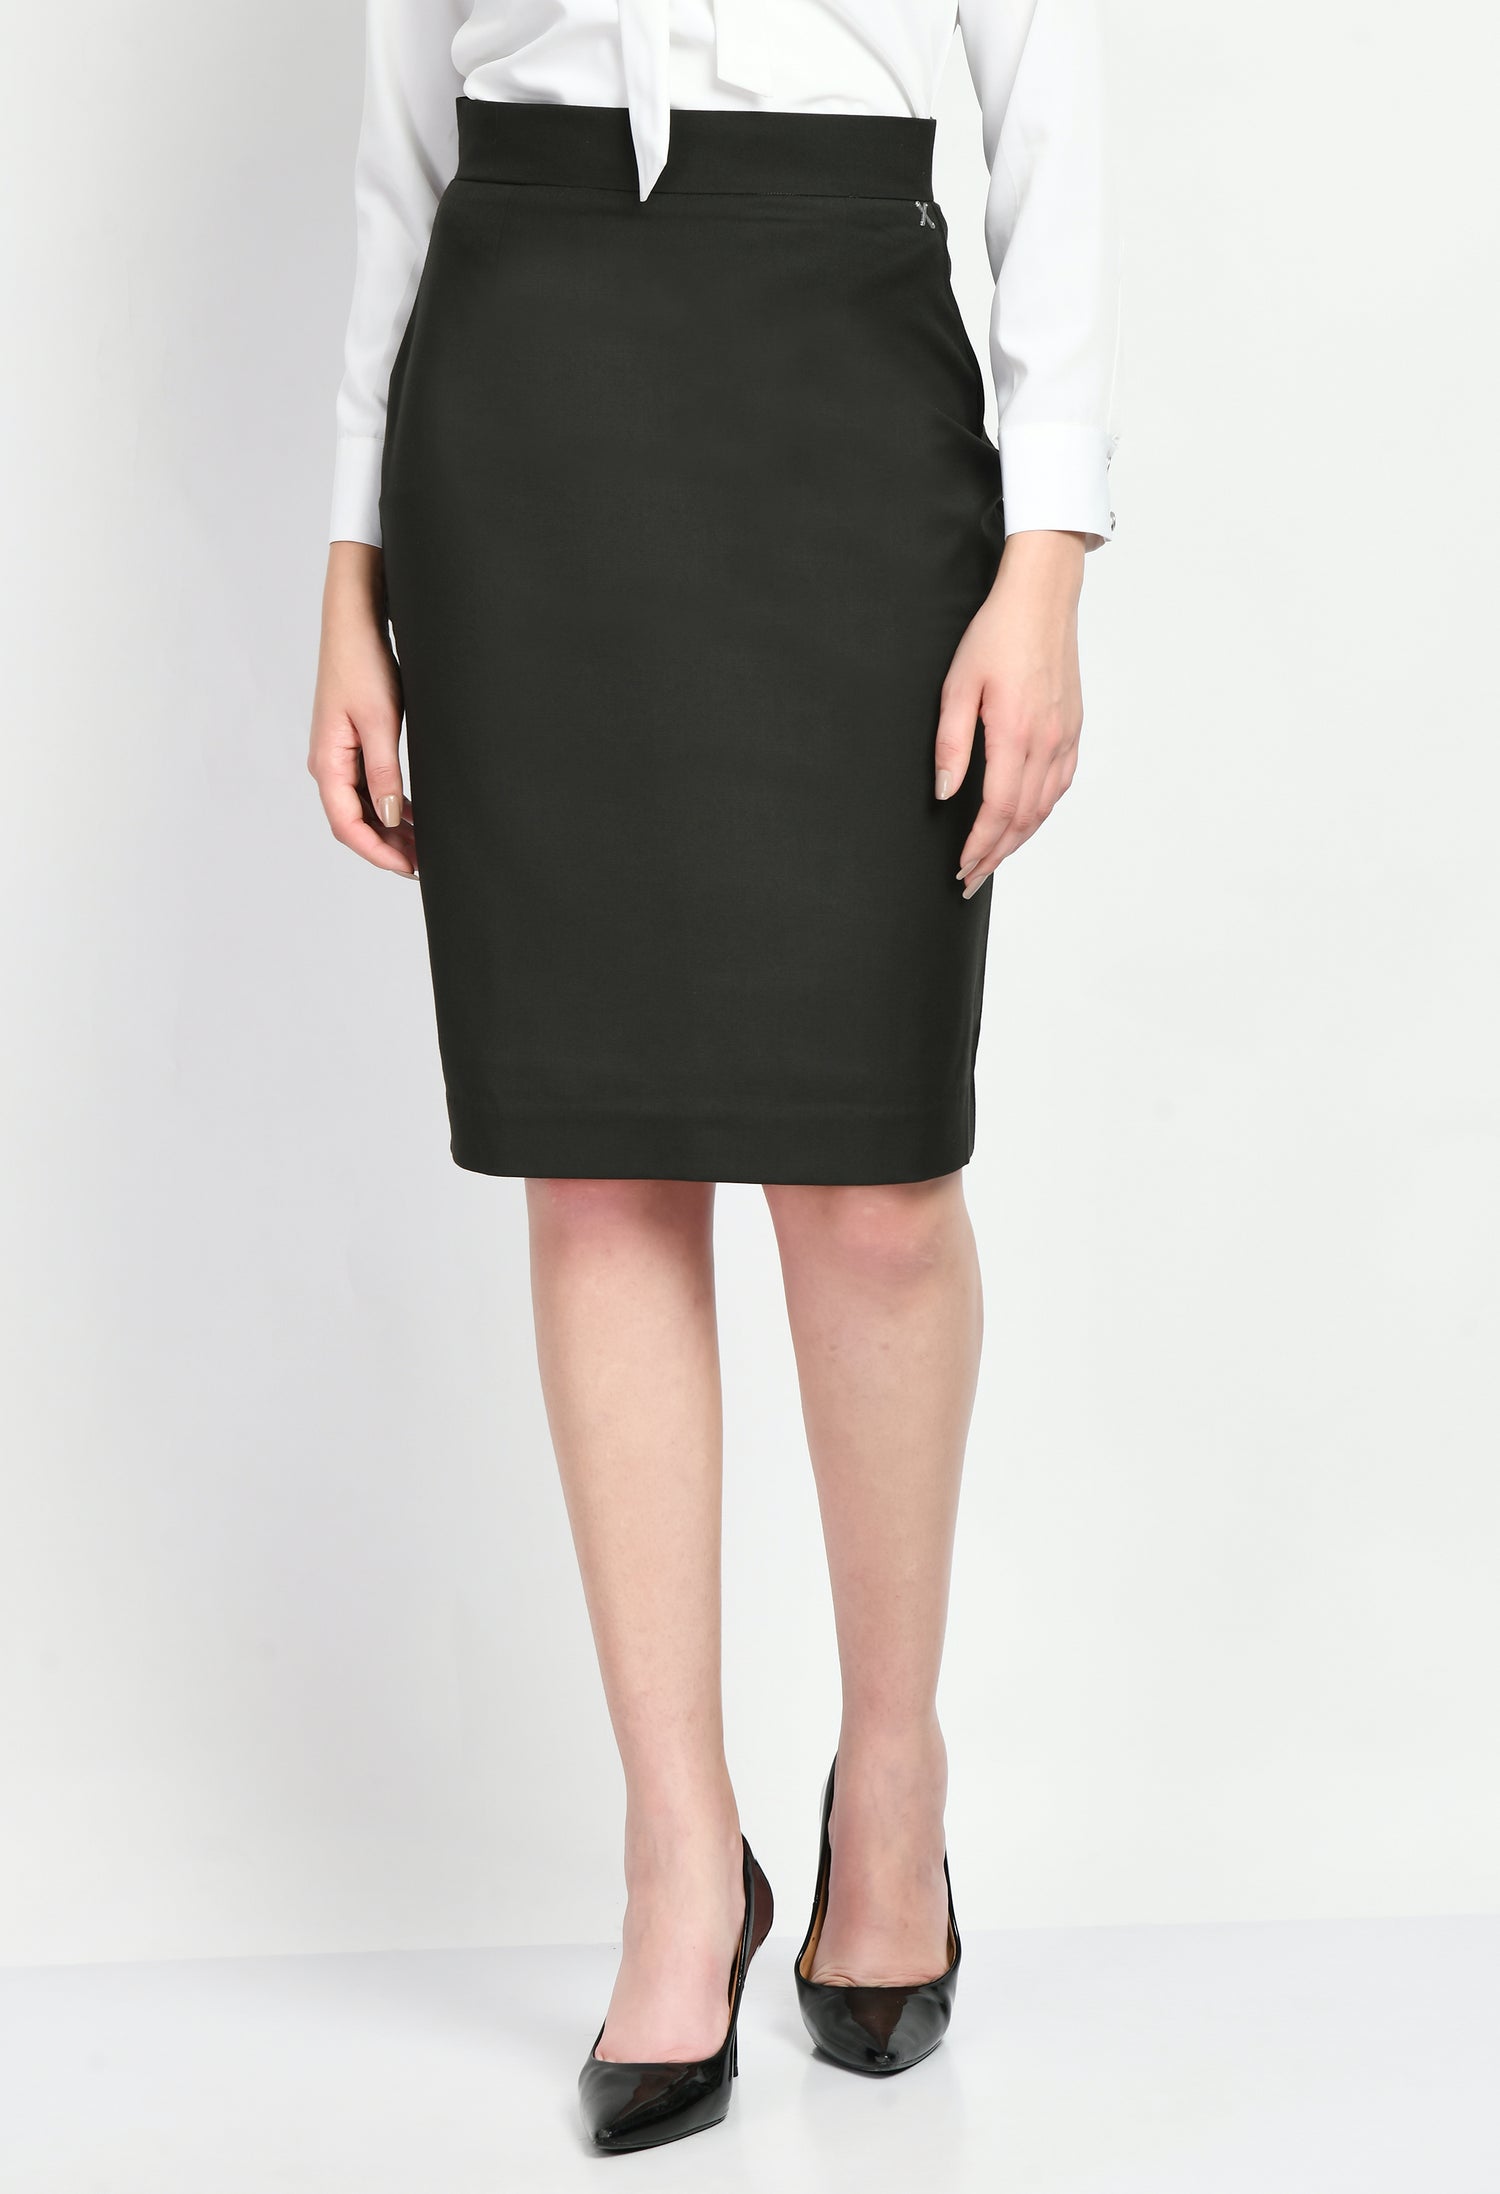 Exude Joy Solid Short Blazer Pencil Skirt Suit (Olive)